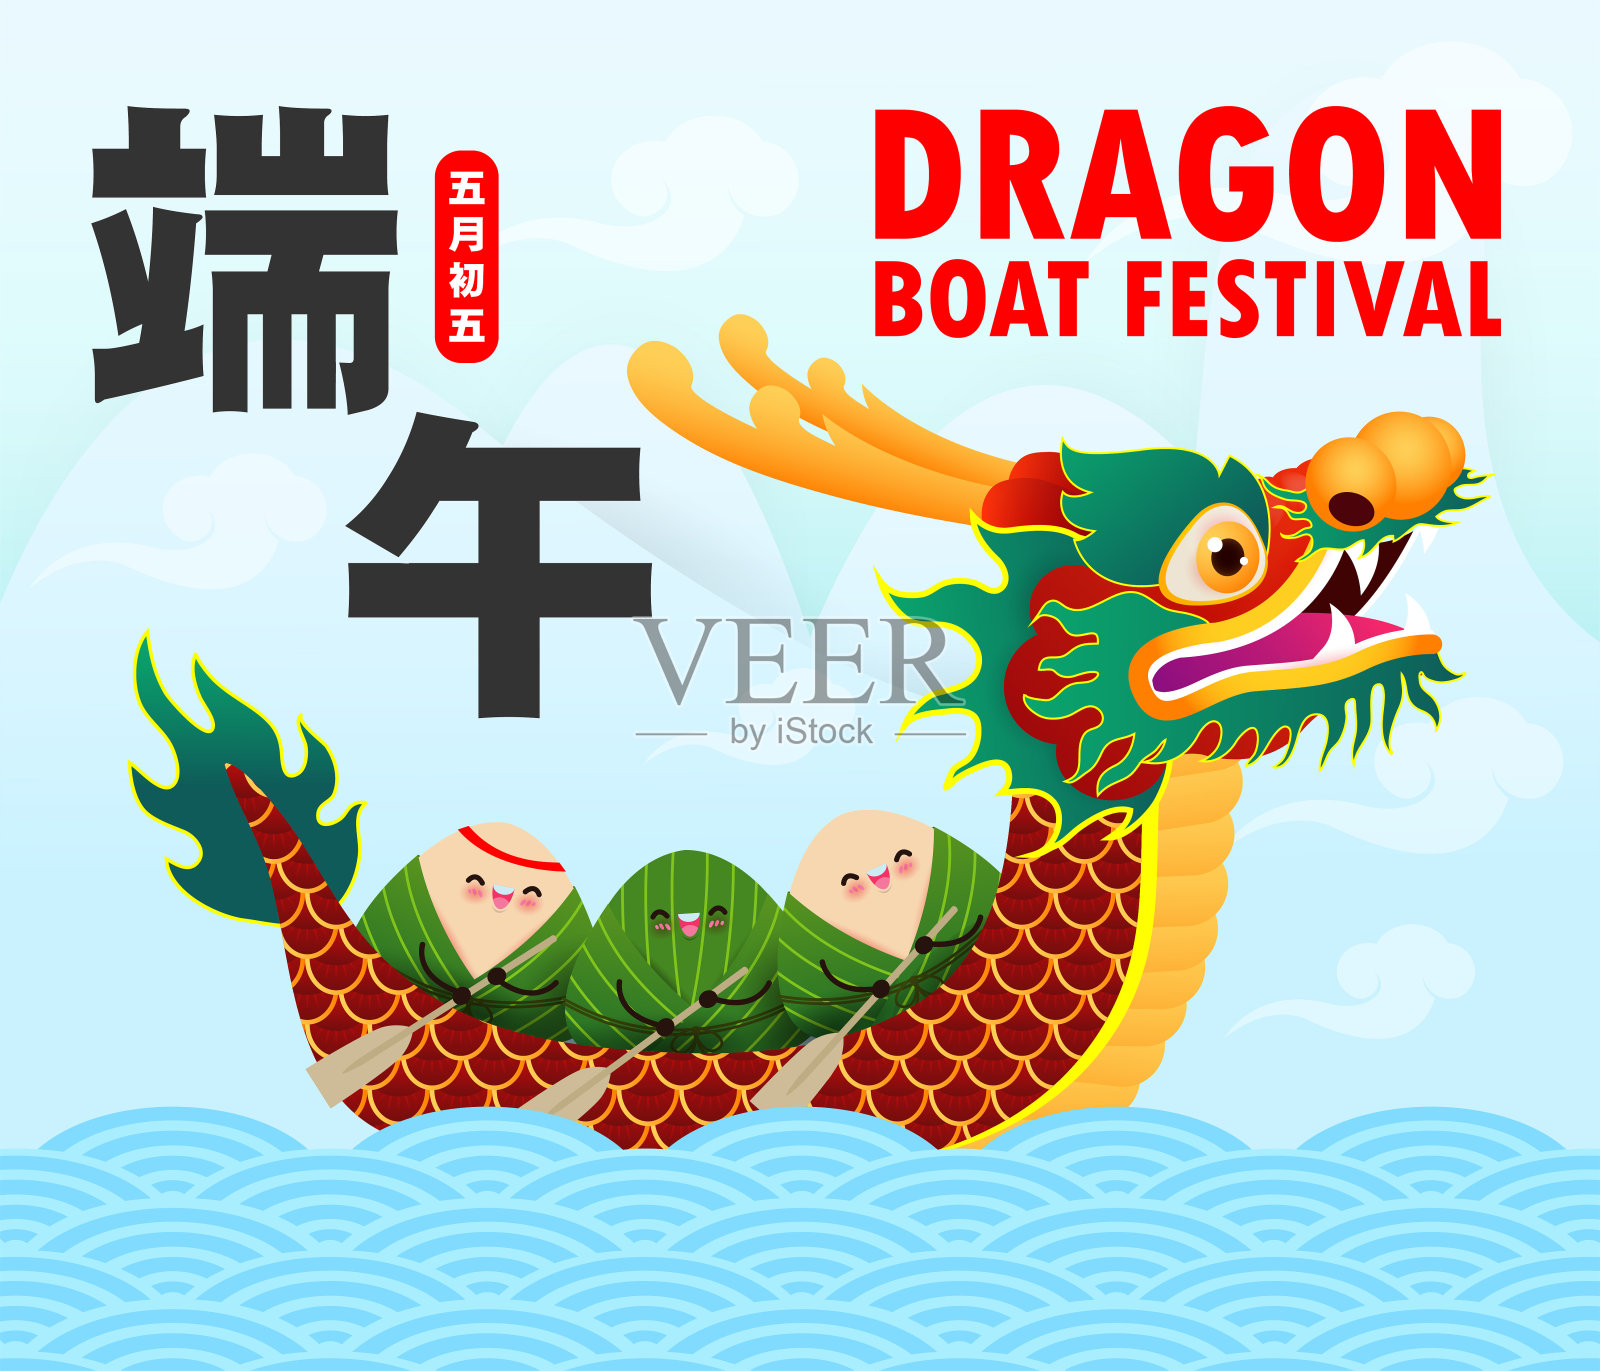 以中国龙舟竞渡节粽子、可爱汉字设计的欢乐端午贺卡为背景矢量插图。端午节，五月初五设计模板素材